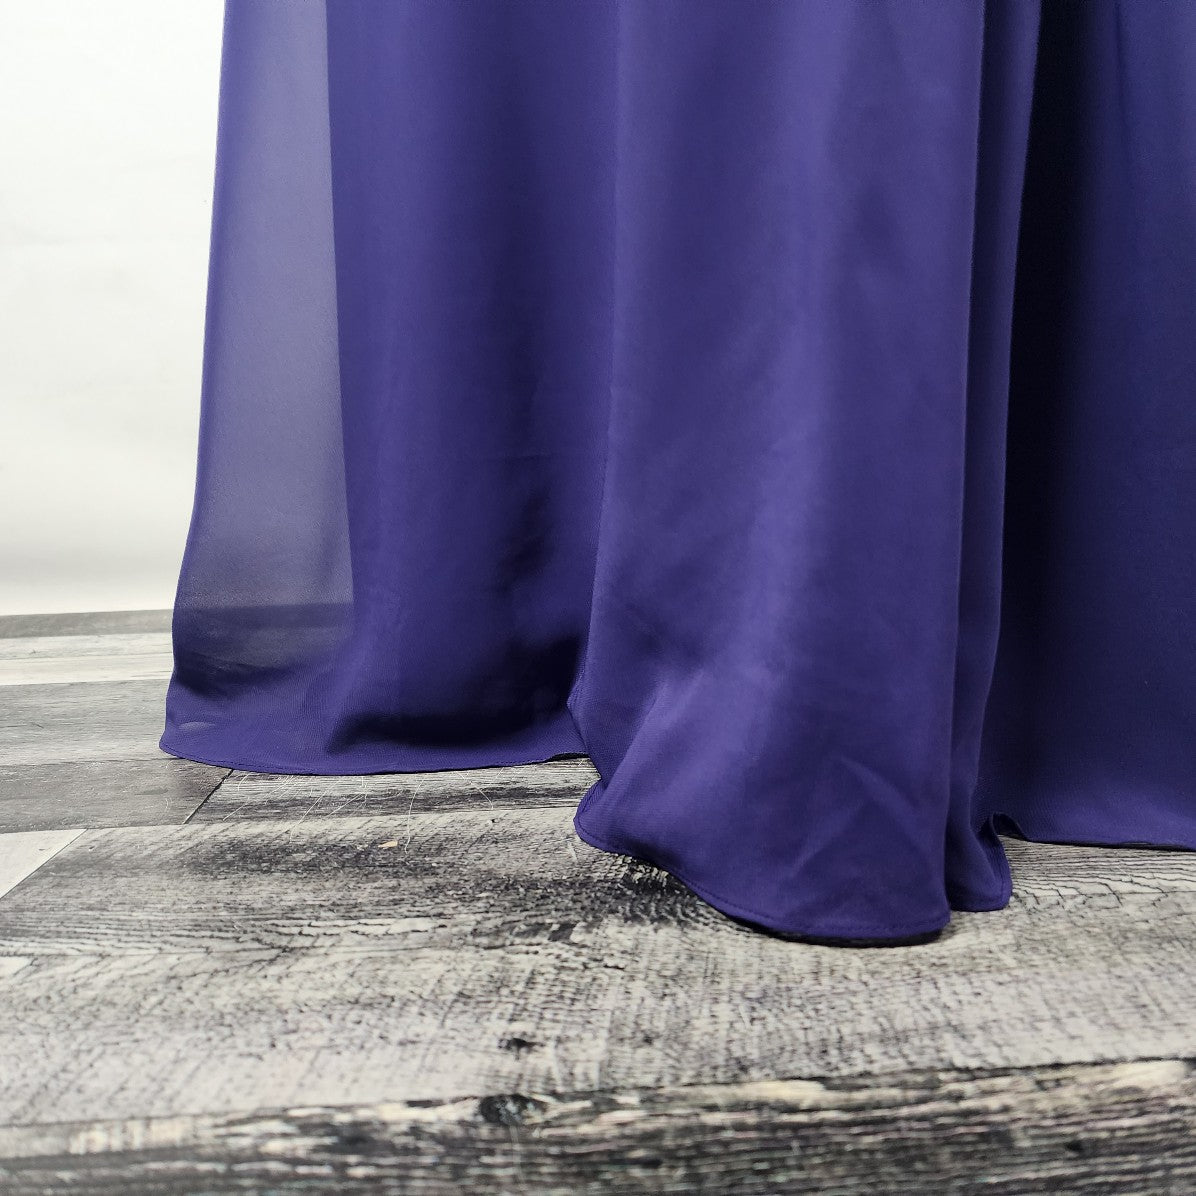 JJ's House Purple Bridesmaid Event Gown Size 1X-2X